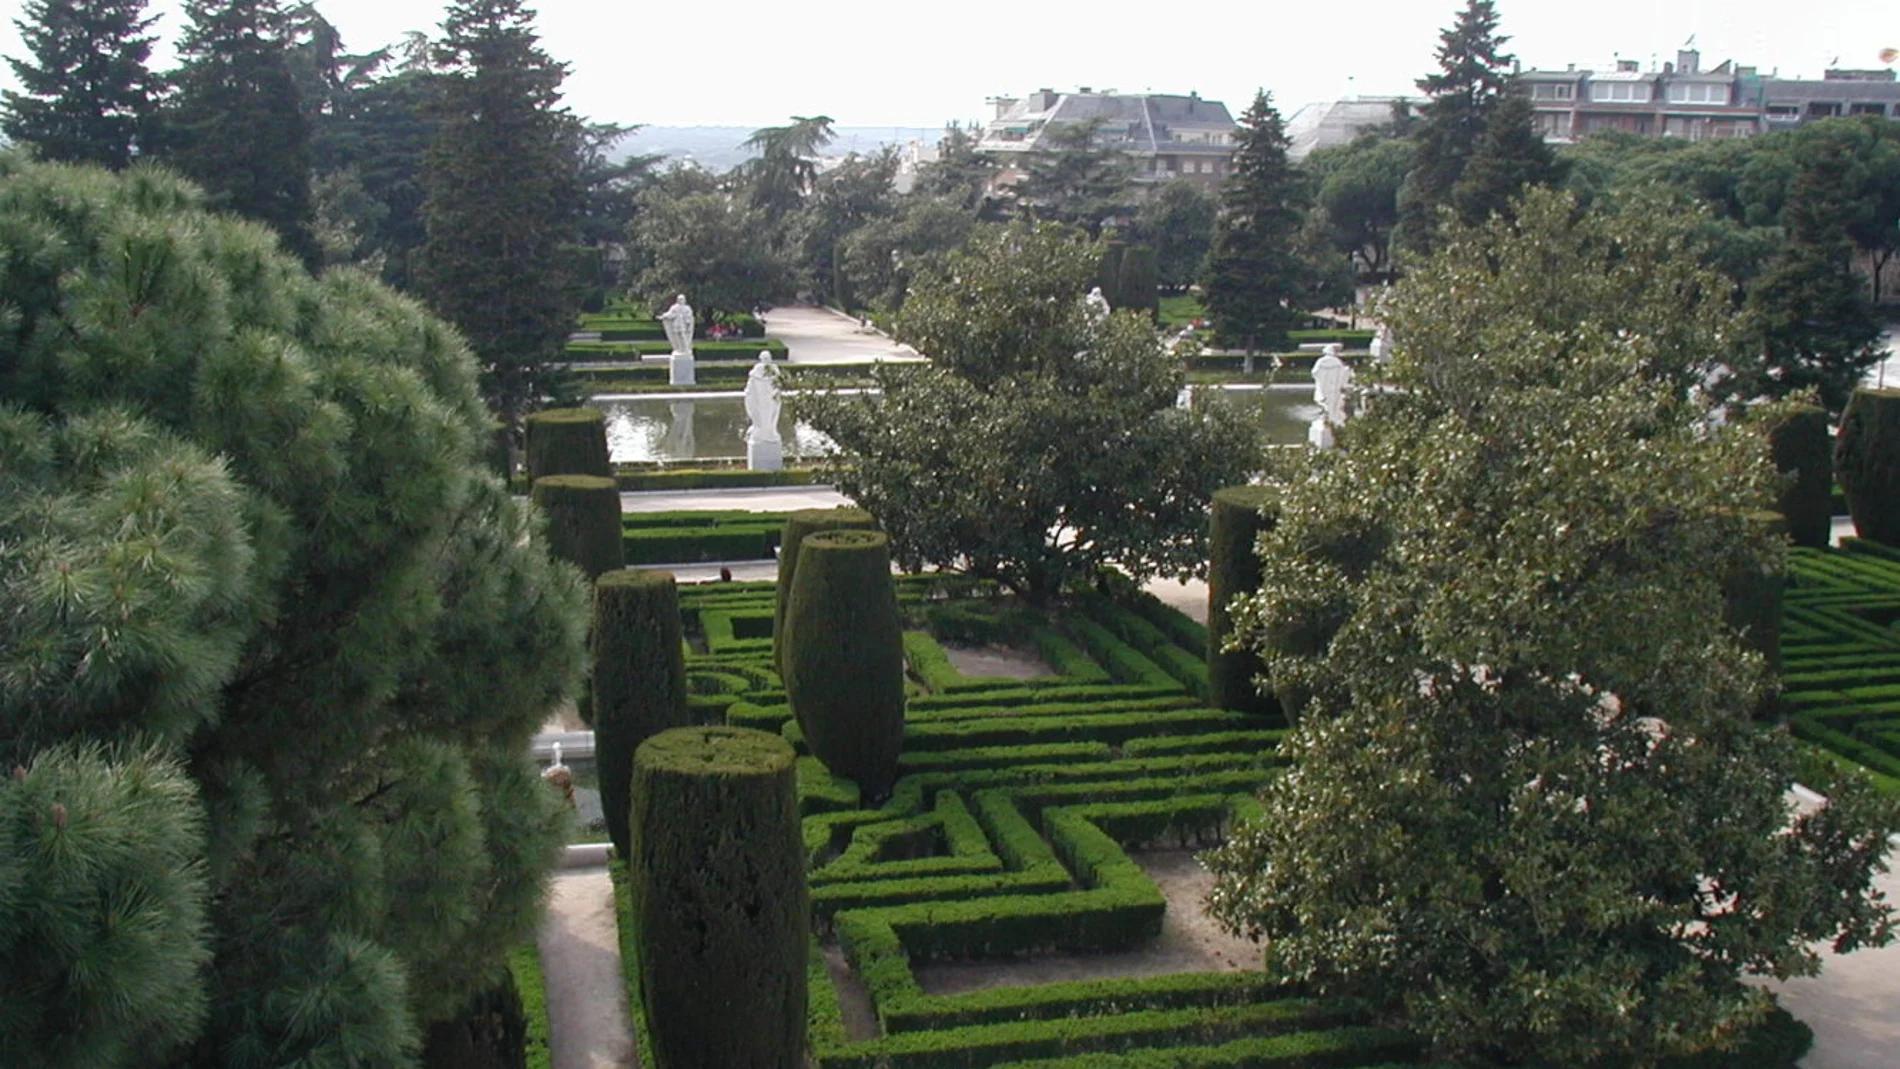 Jardines de Sabatini del Palacio real de Madrid